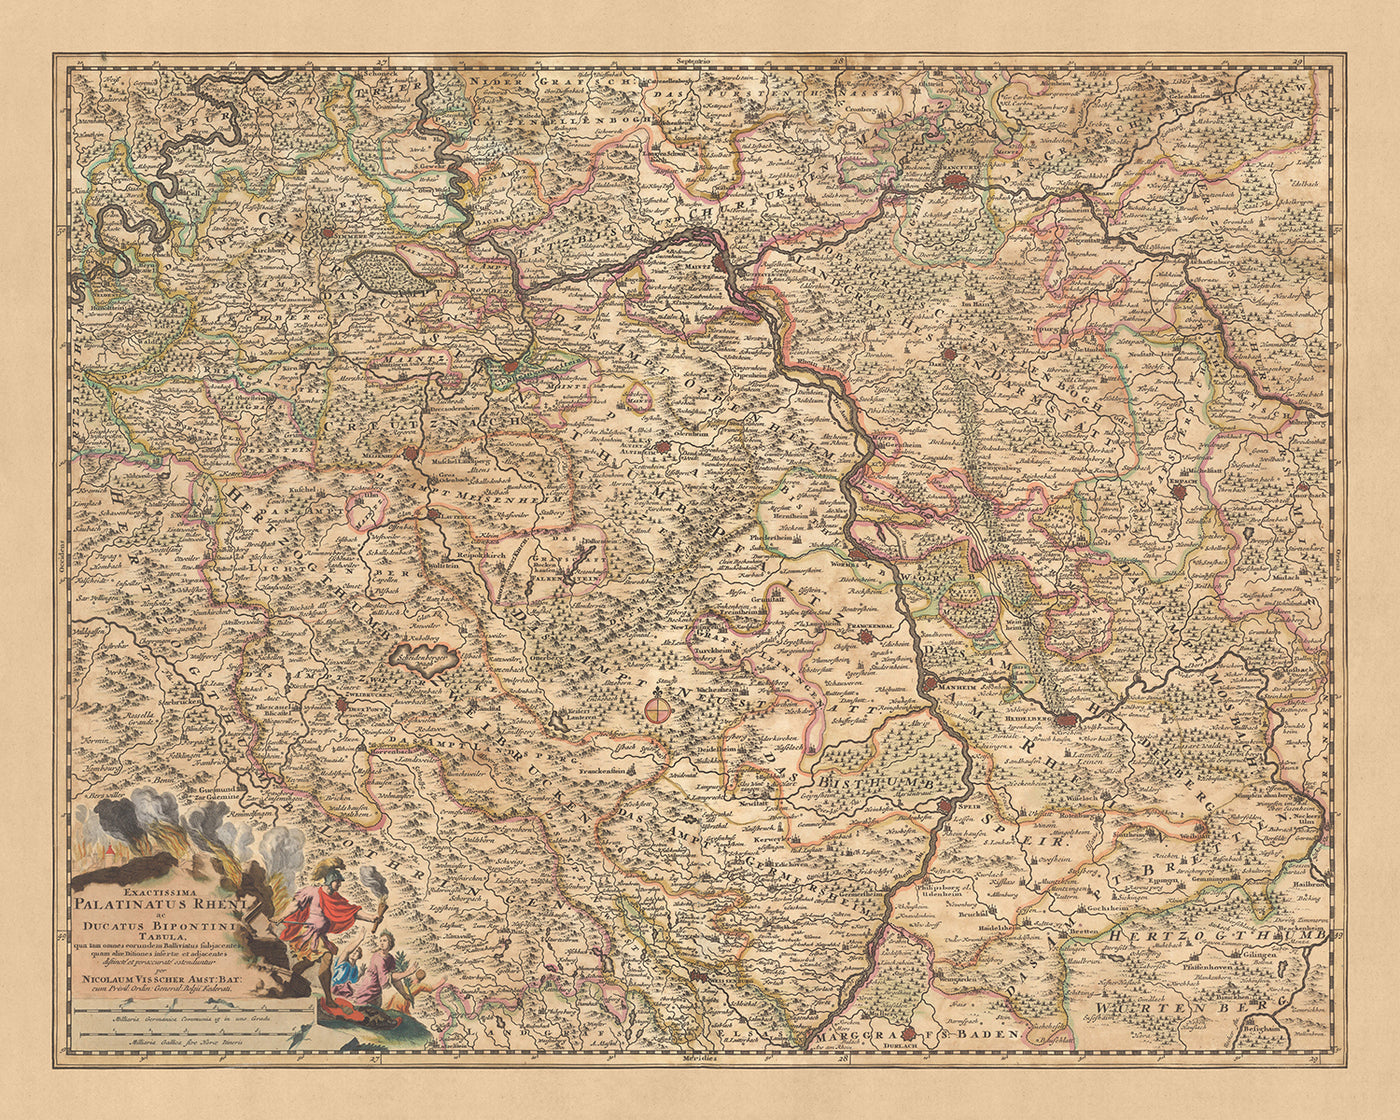 Ancienne carte du duché du Rhin Palatinat et de Zweibrücken, Visscher, 1690 : Francfort, Mannheim, Sarrebruck, Mayence, Darmstadt